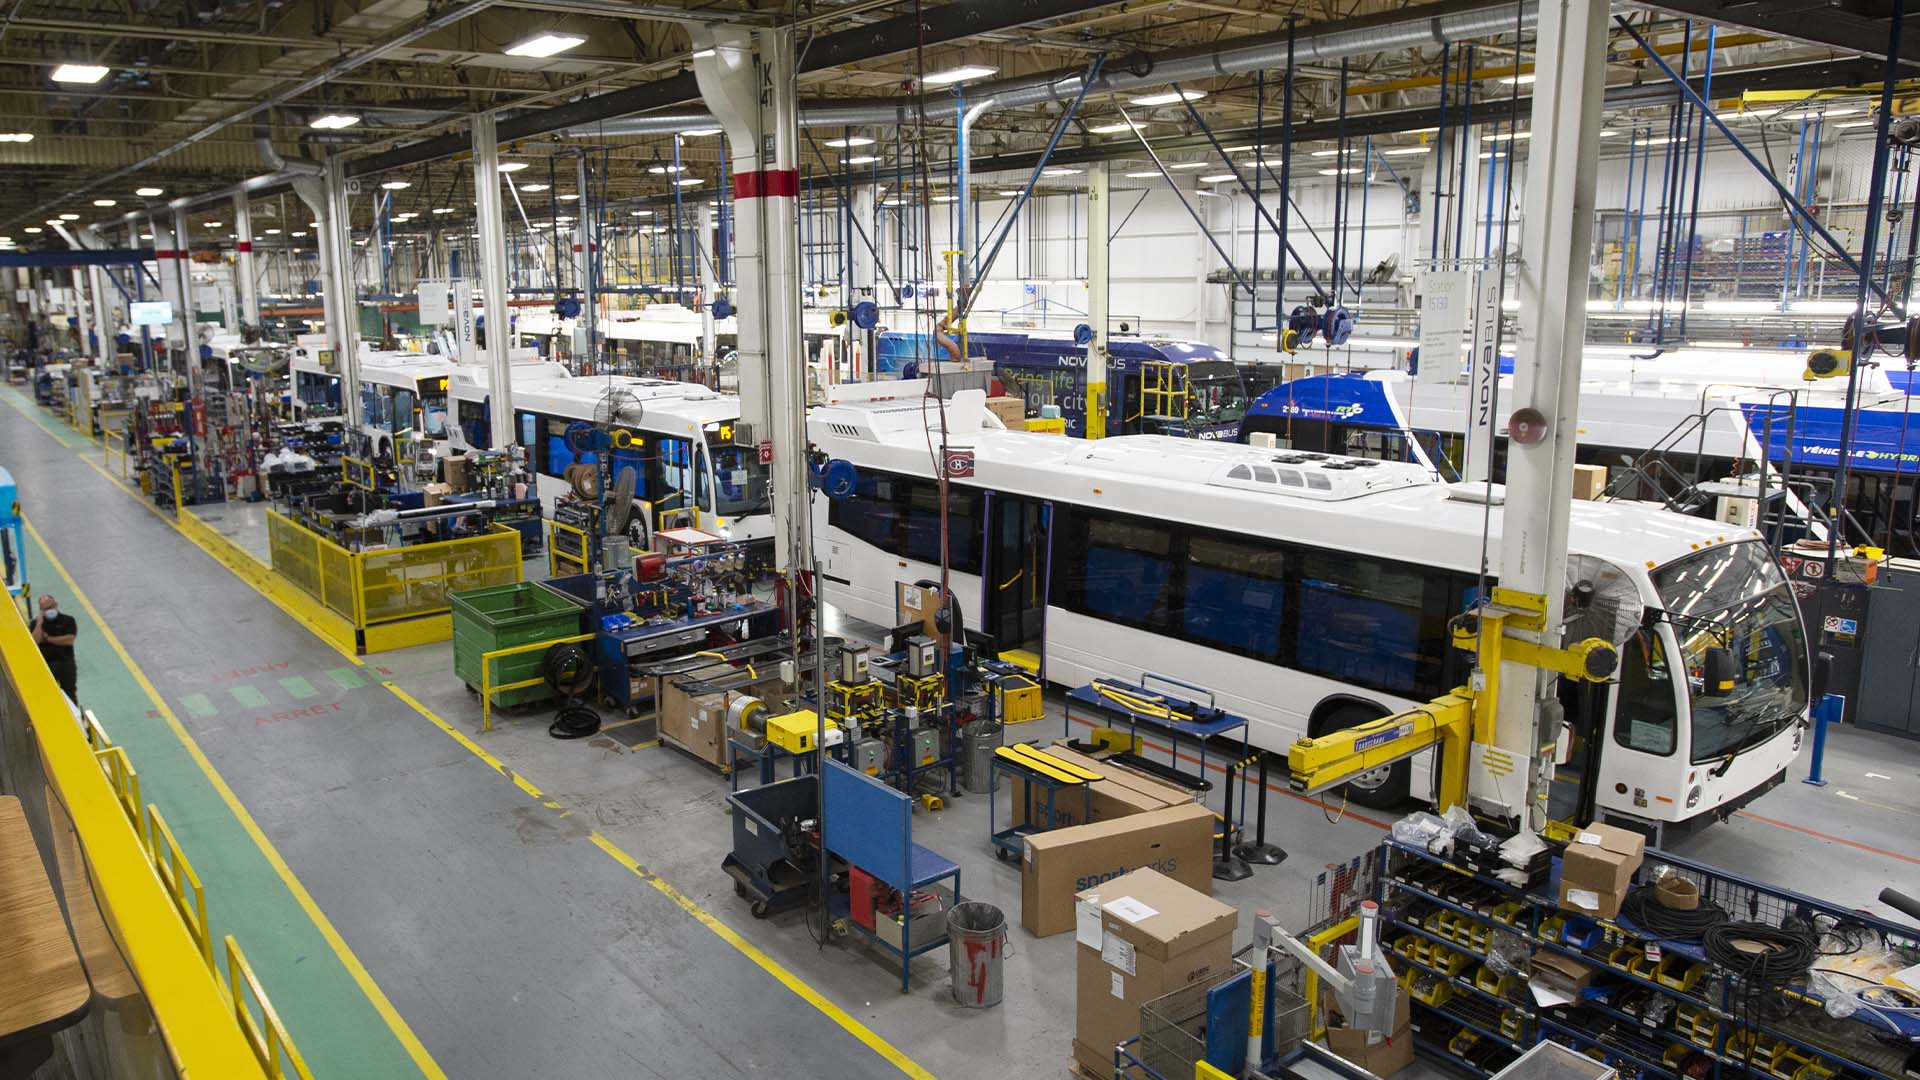 Des autobus sont vus sur la chaîne de montage de l'usine Novabus le mardi 8 juin 2021 à Saint-Eustache, au Québec.